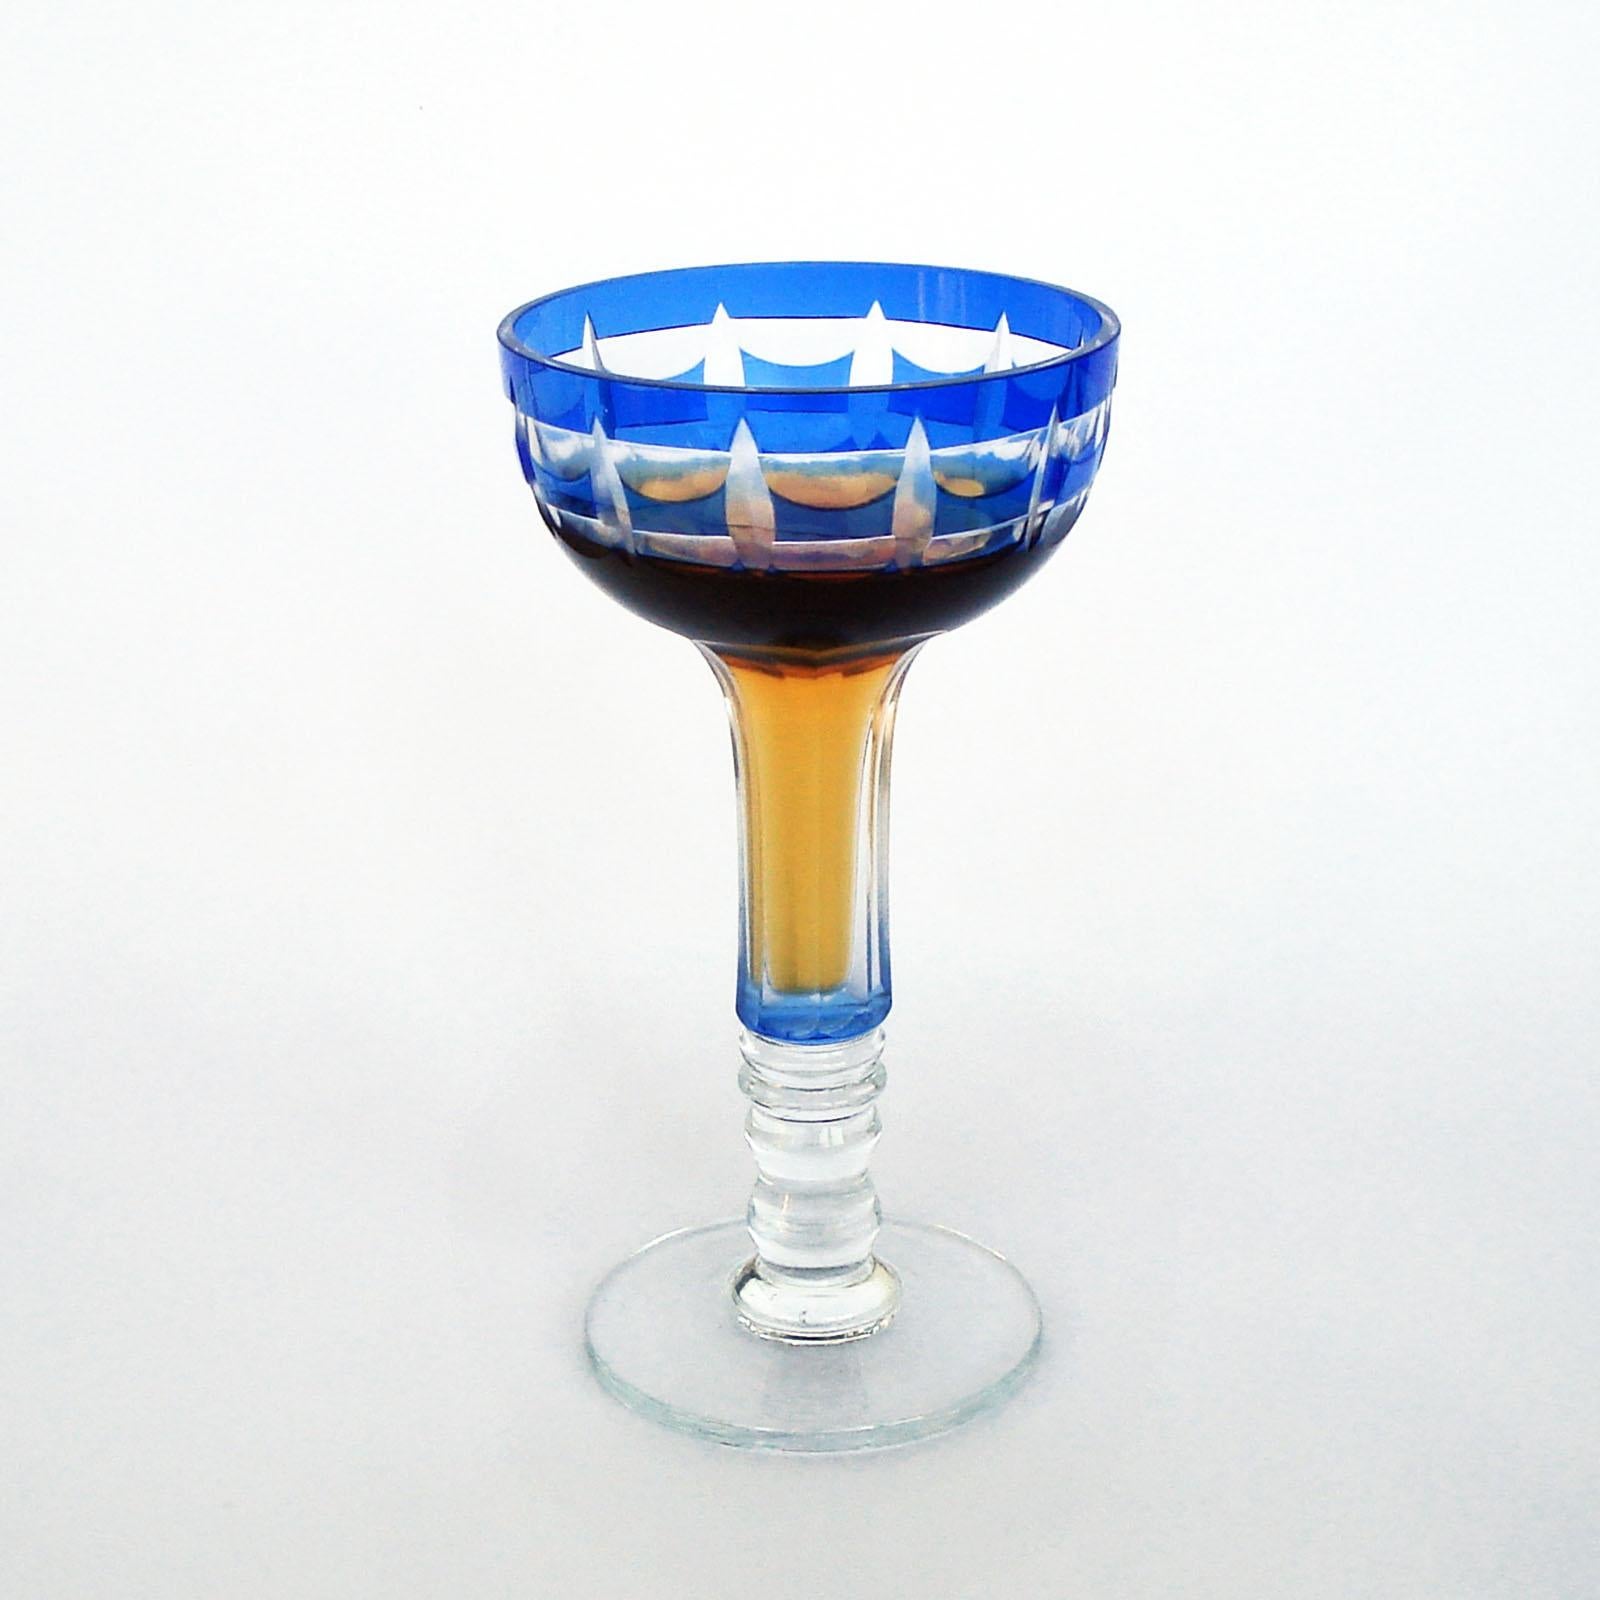 Un ensemble de 12 gobelets en cristal soufflé, entièrement faits à la main, avec un recouvrement bleu cobalt taillé à la main et une décoration géométrique nette. La forme est agréable à tenir, un corps arrondi avec une tige creuse sur une base bien